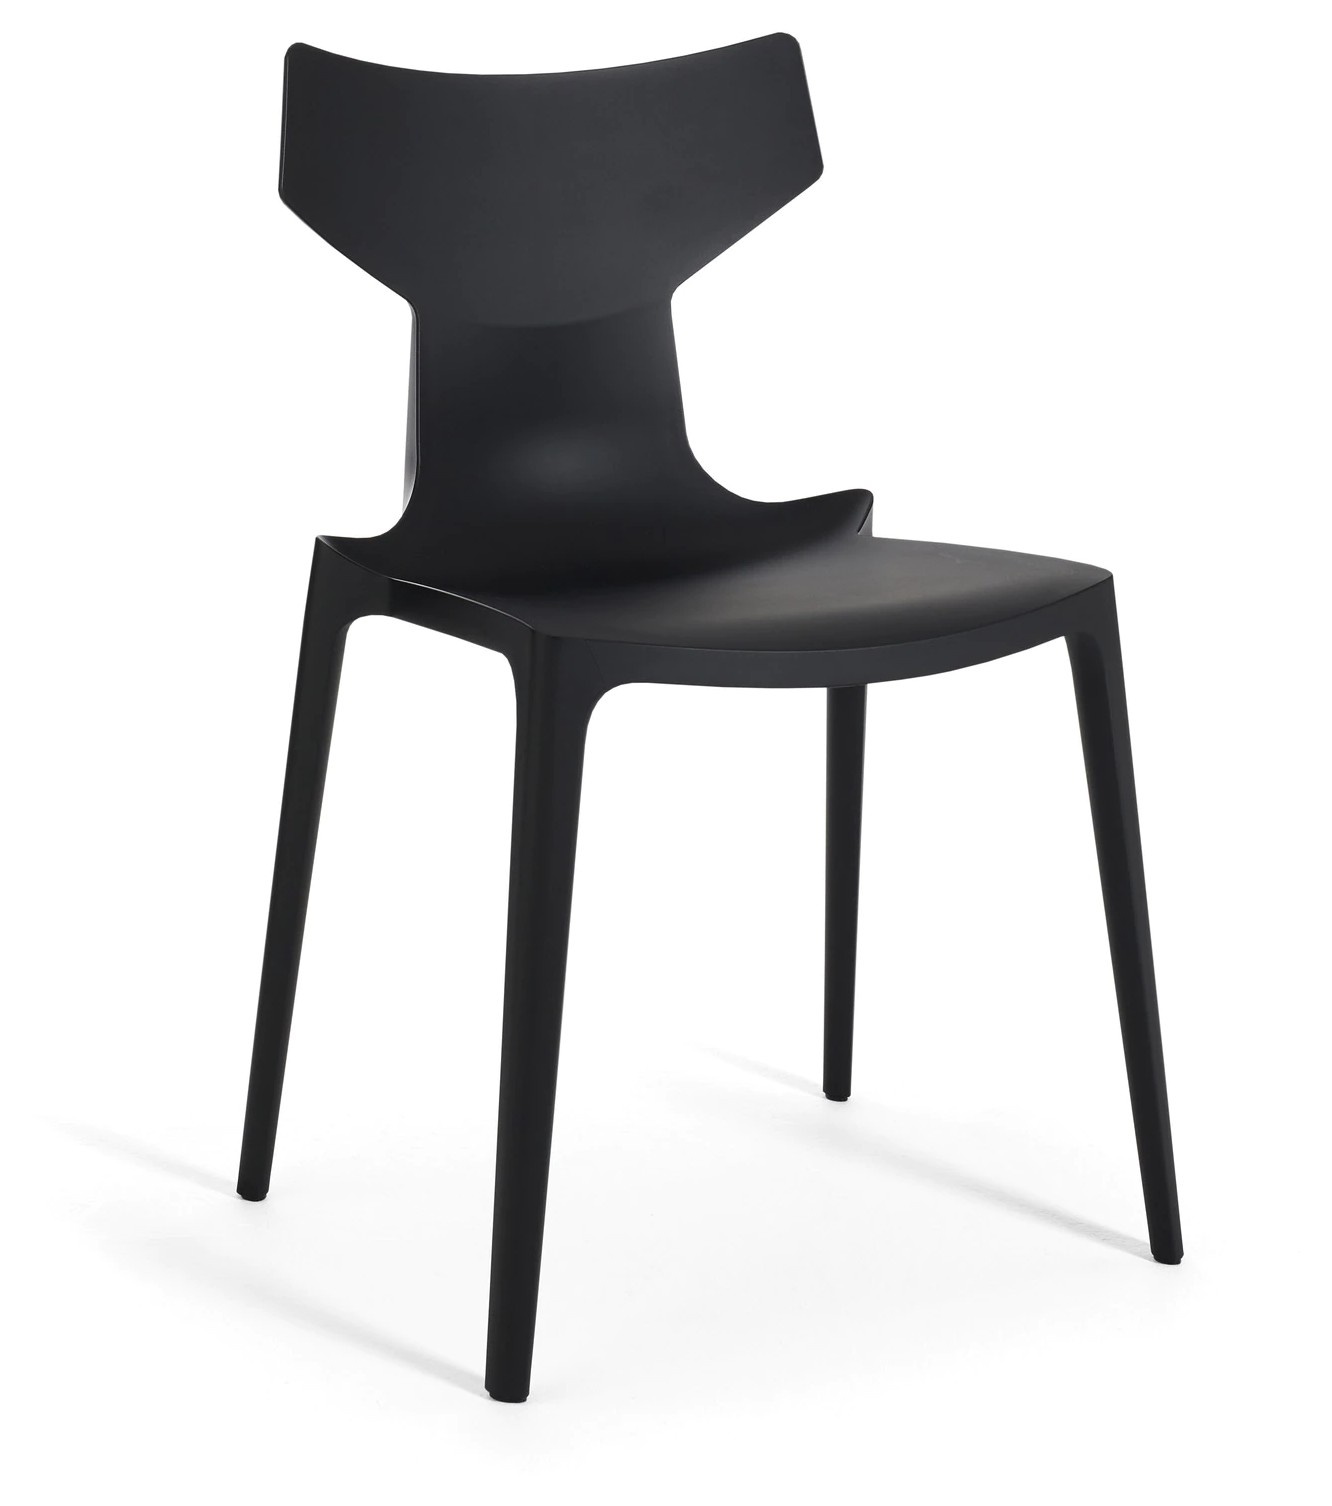 Scaun Kartell Re-Chair design Antonio Citterio negru Kartell